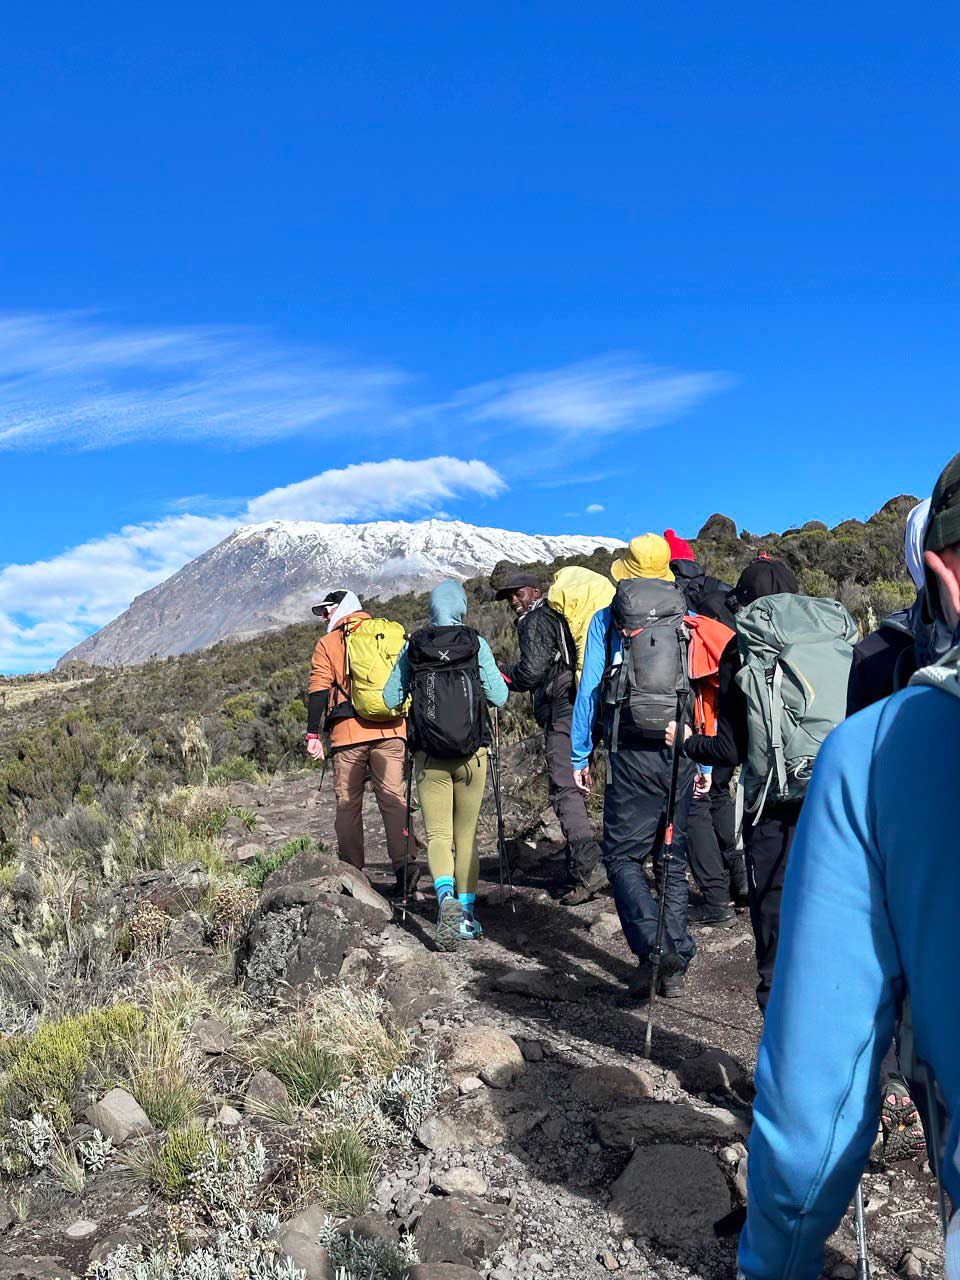 зимнее восхождение на Килиманджаро, Африка зимой, Андрей Борисов, зимний поход